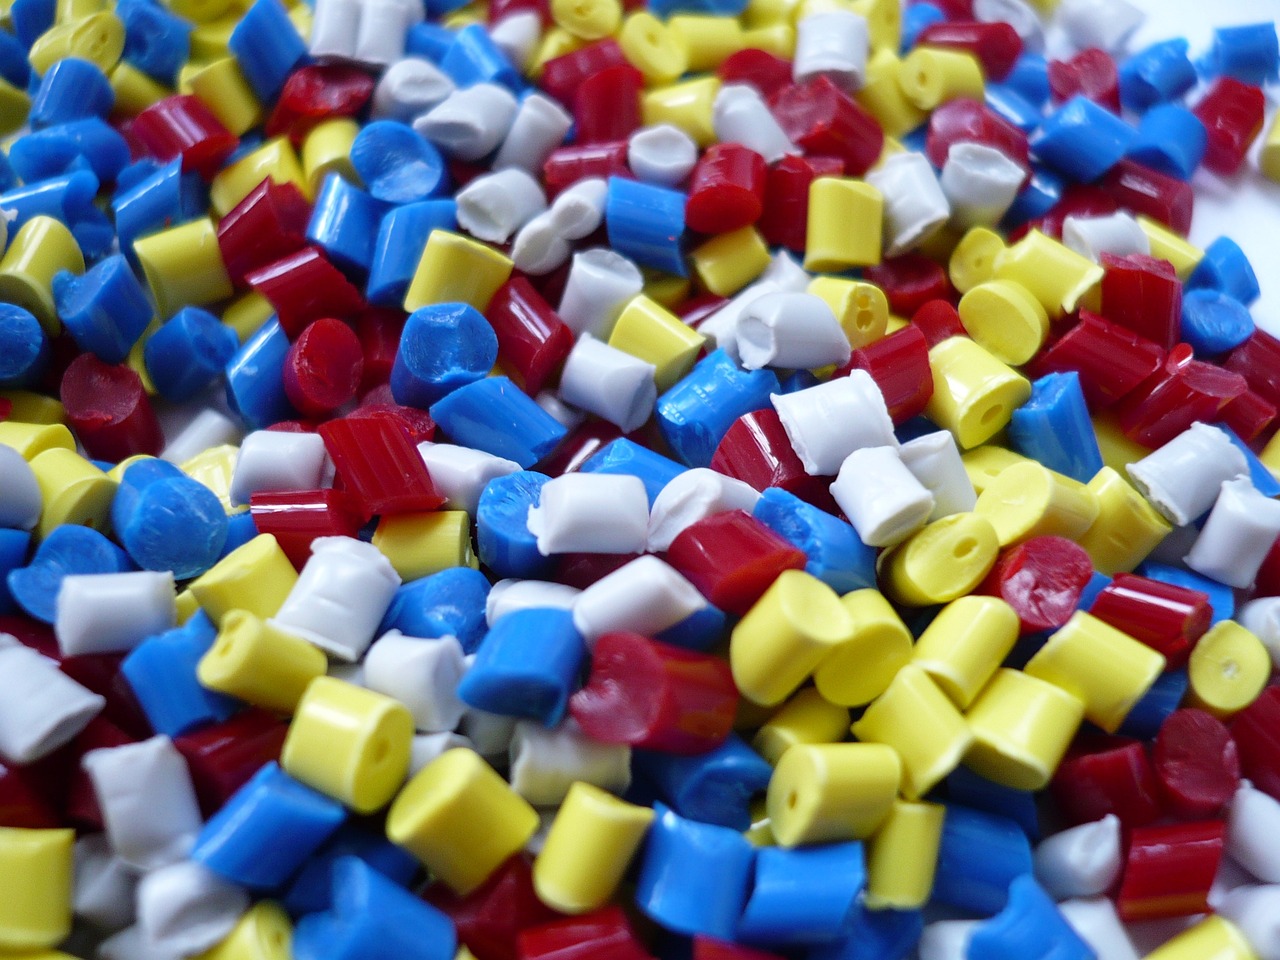 Curso Desarrollo de legos temáticos aplicando la tecnología de inyección de plásticos (Polímeros)